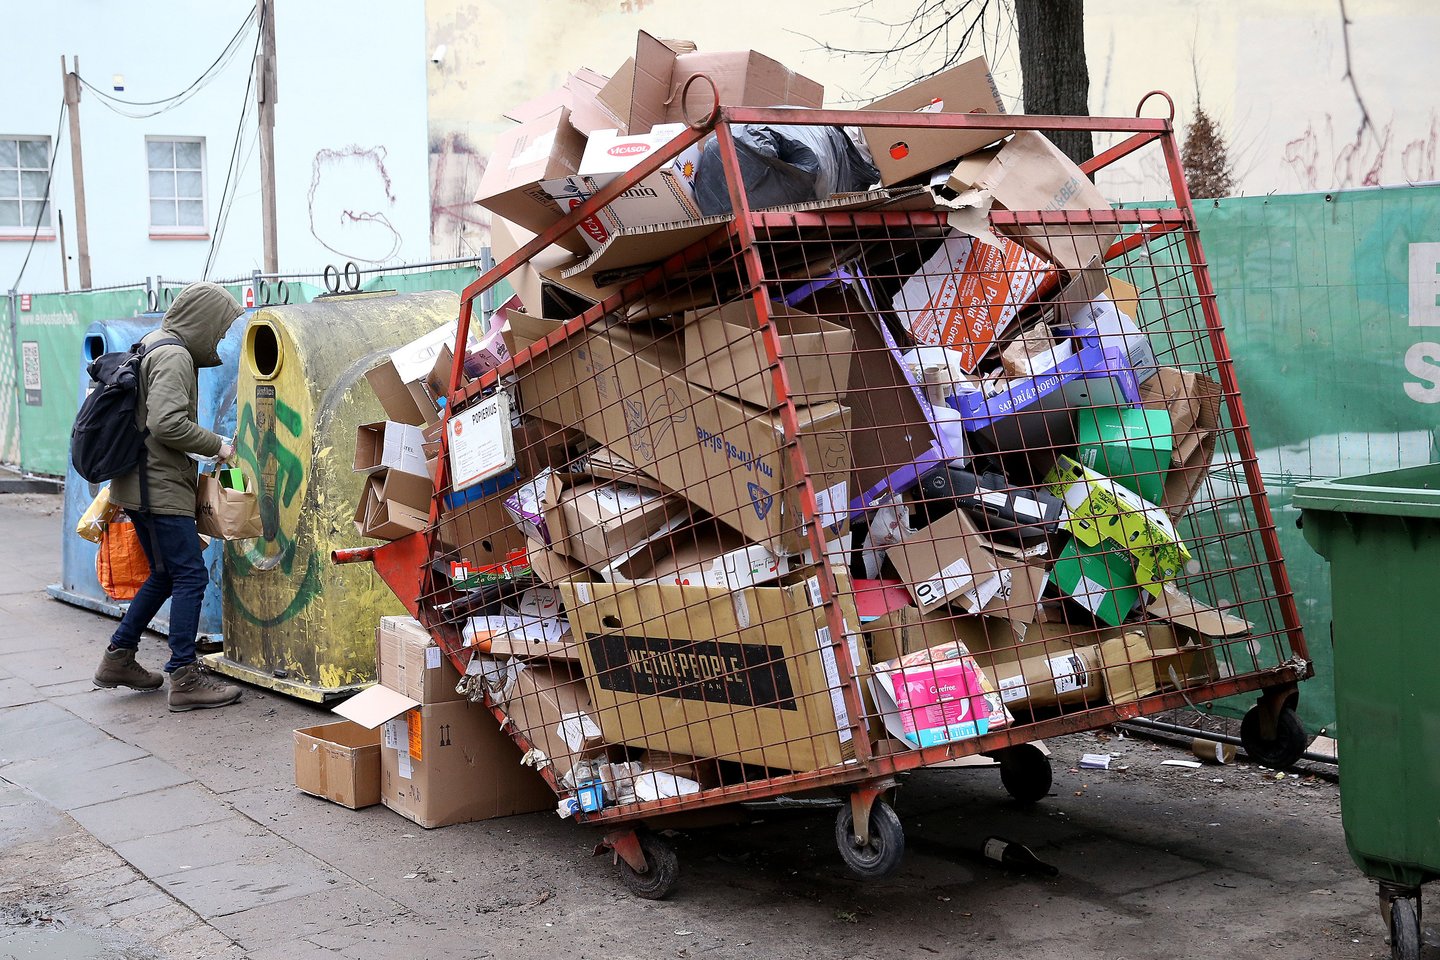 Šiukšlių konteineriai Pylimo gatvėje<br>R.Danisevičiaus asociatyvi nuotr.